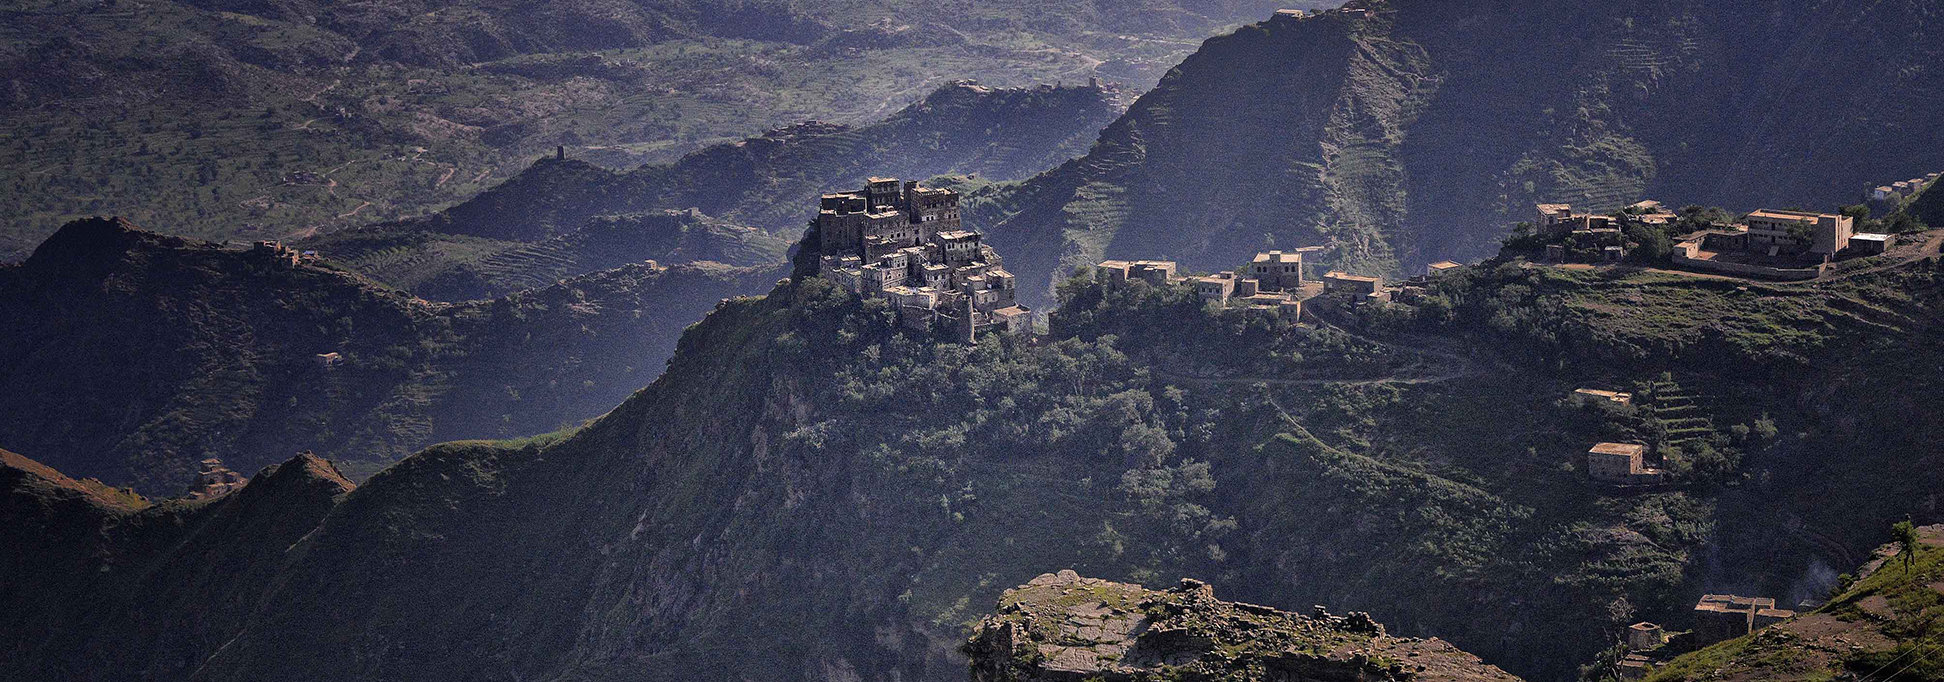 Jabal Haraz, - Haraz mountains in western Yemen